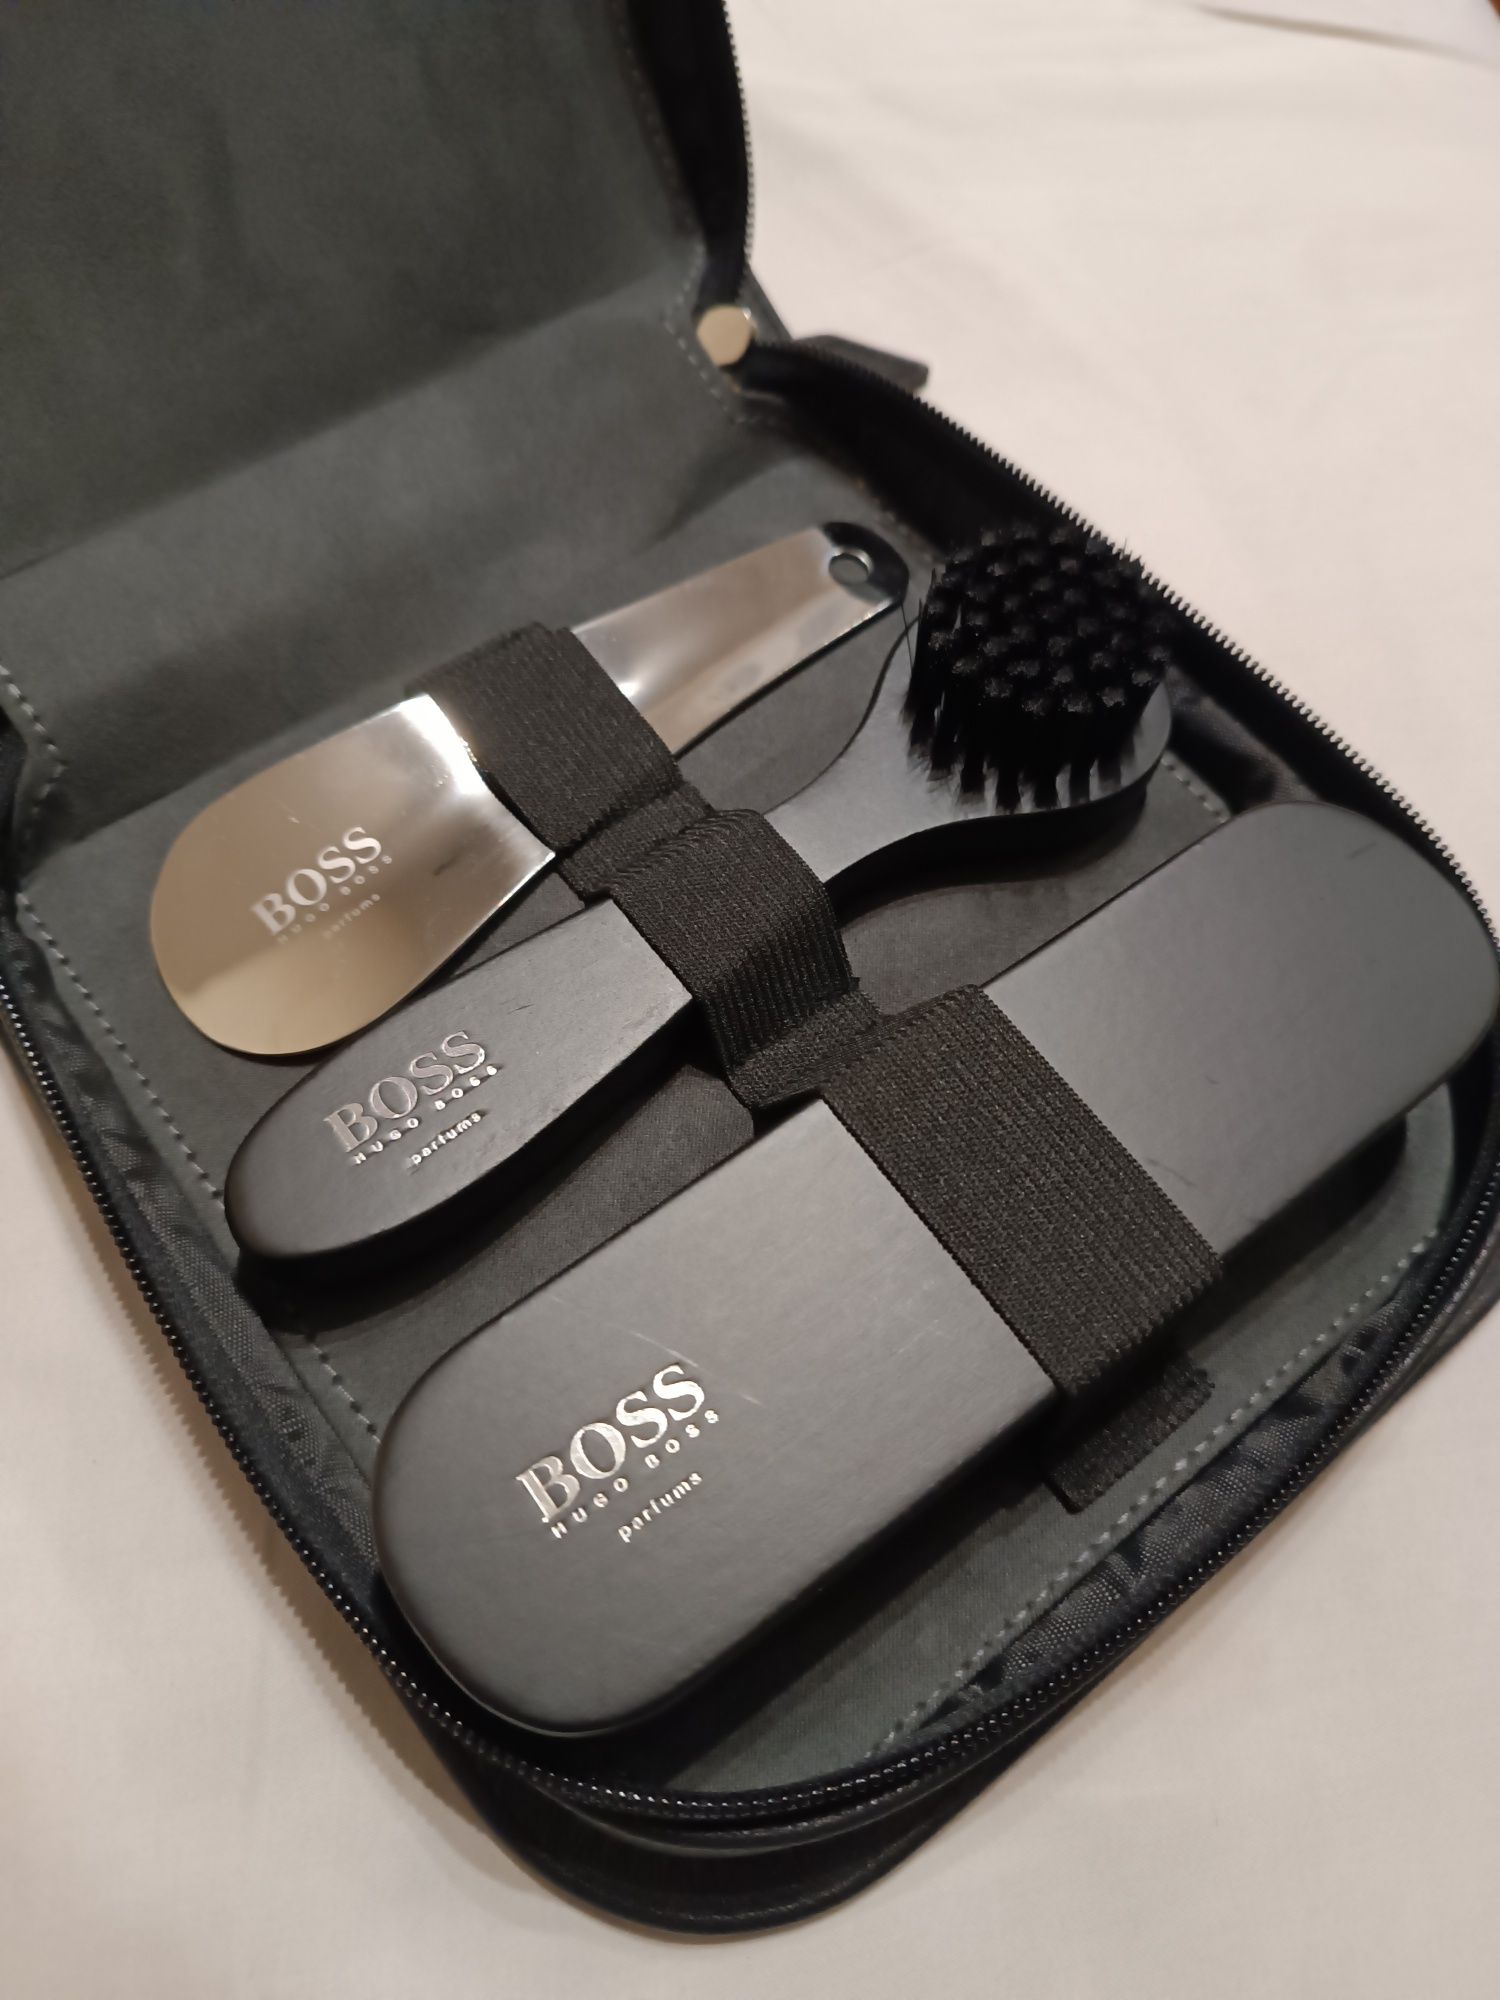 Hugo Boss zestaw do czyszczenia obuwia ,buty,łyżka do butów